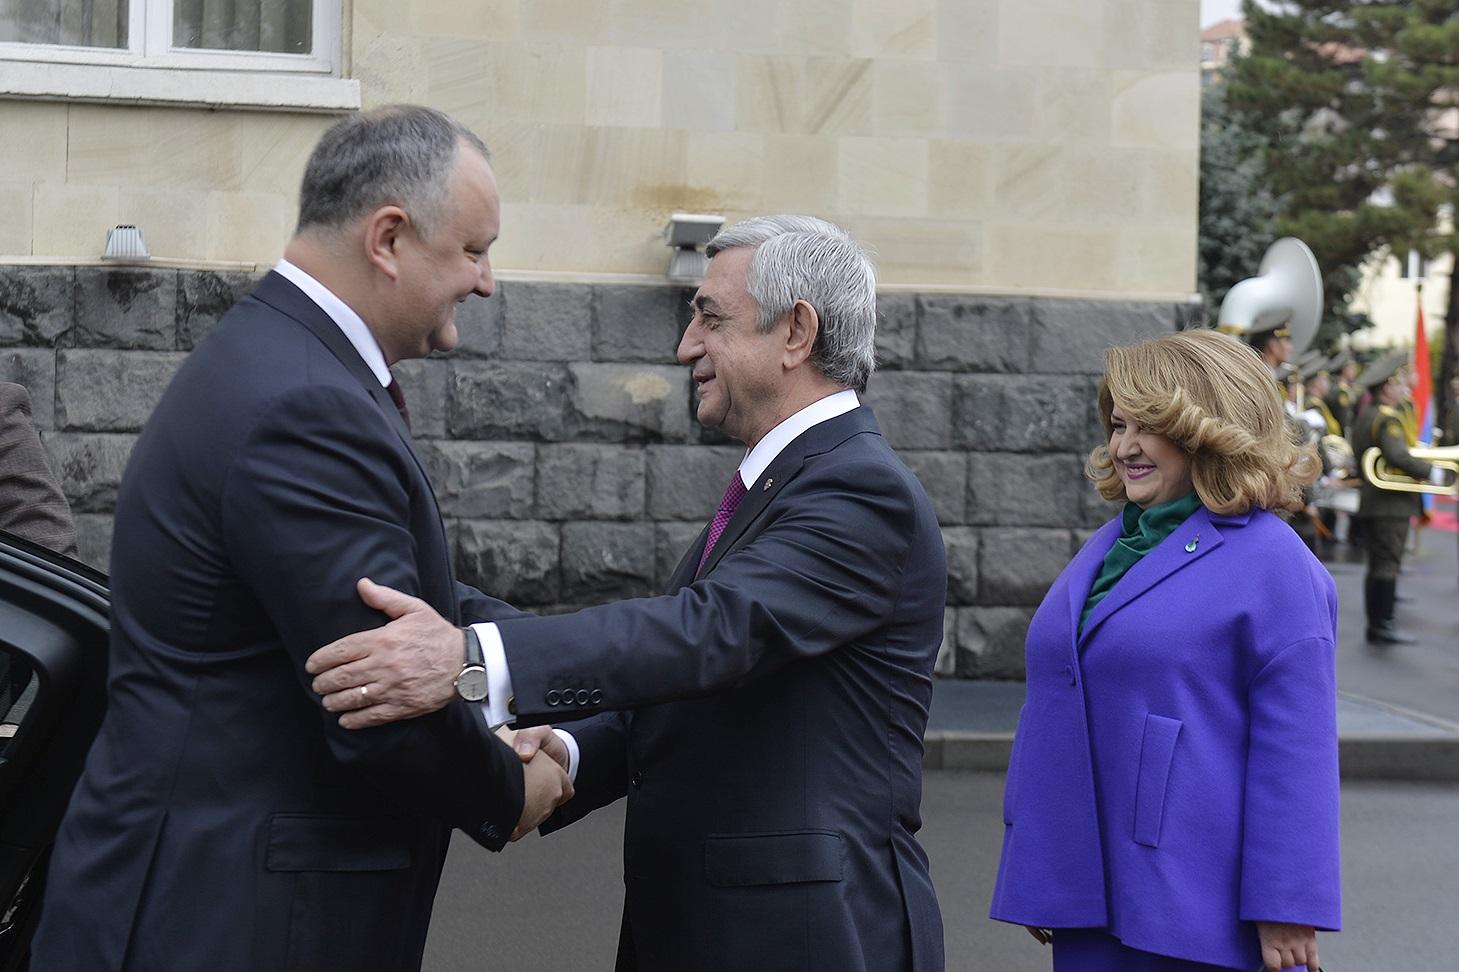 Մոլդովայի նախագահը Հայաստանում է. նա այս այցը պատմական է որակել